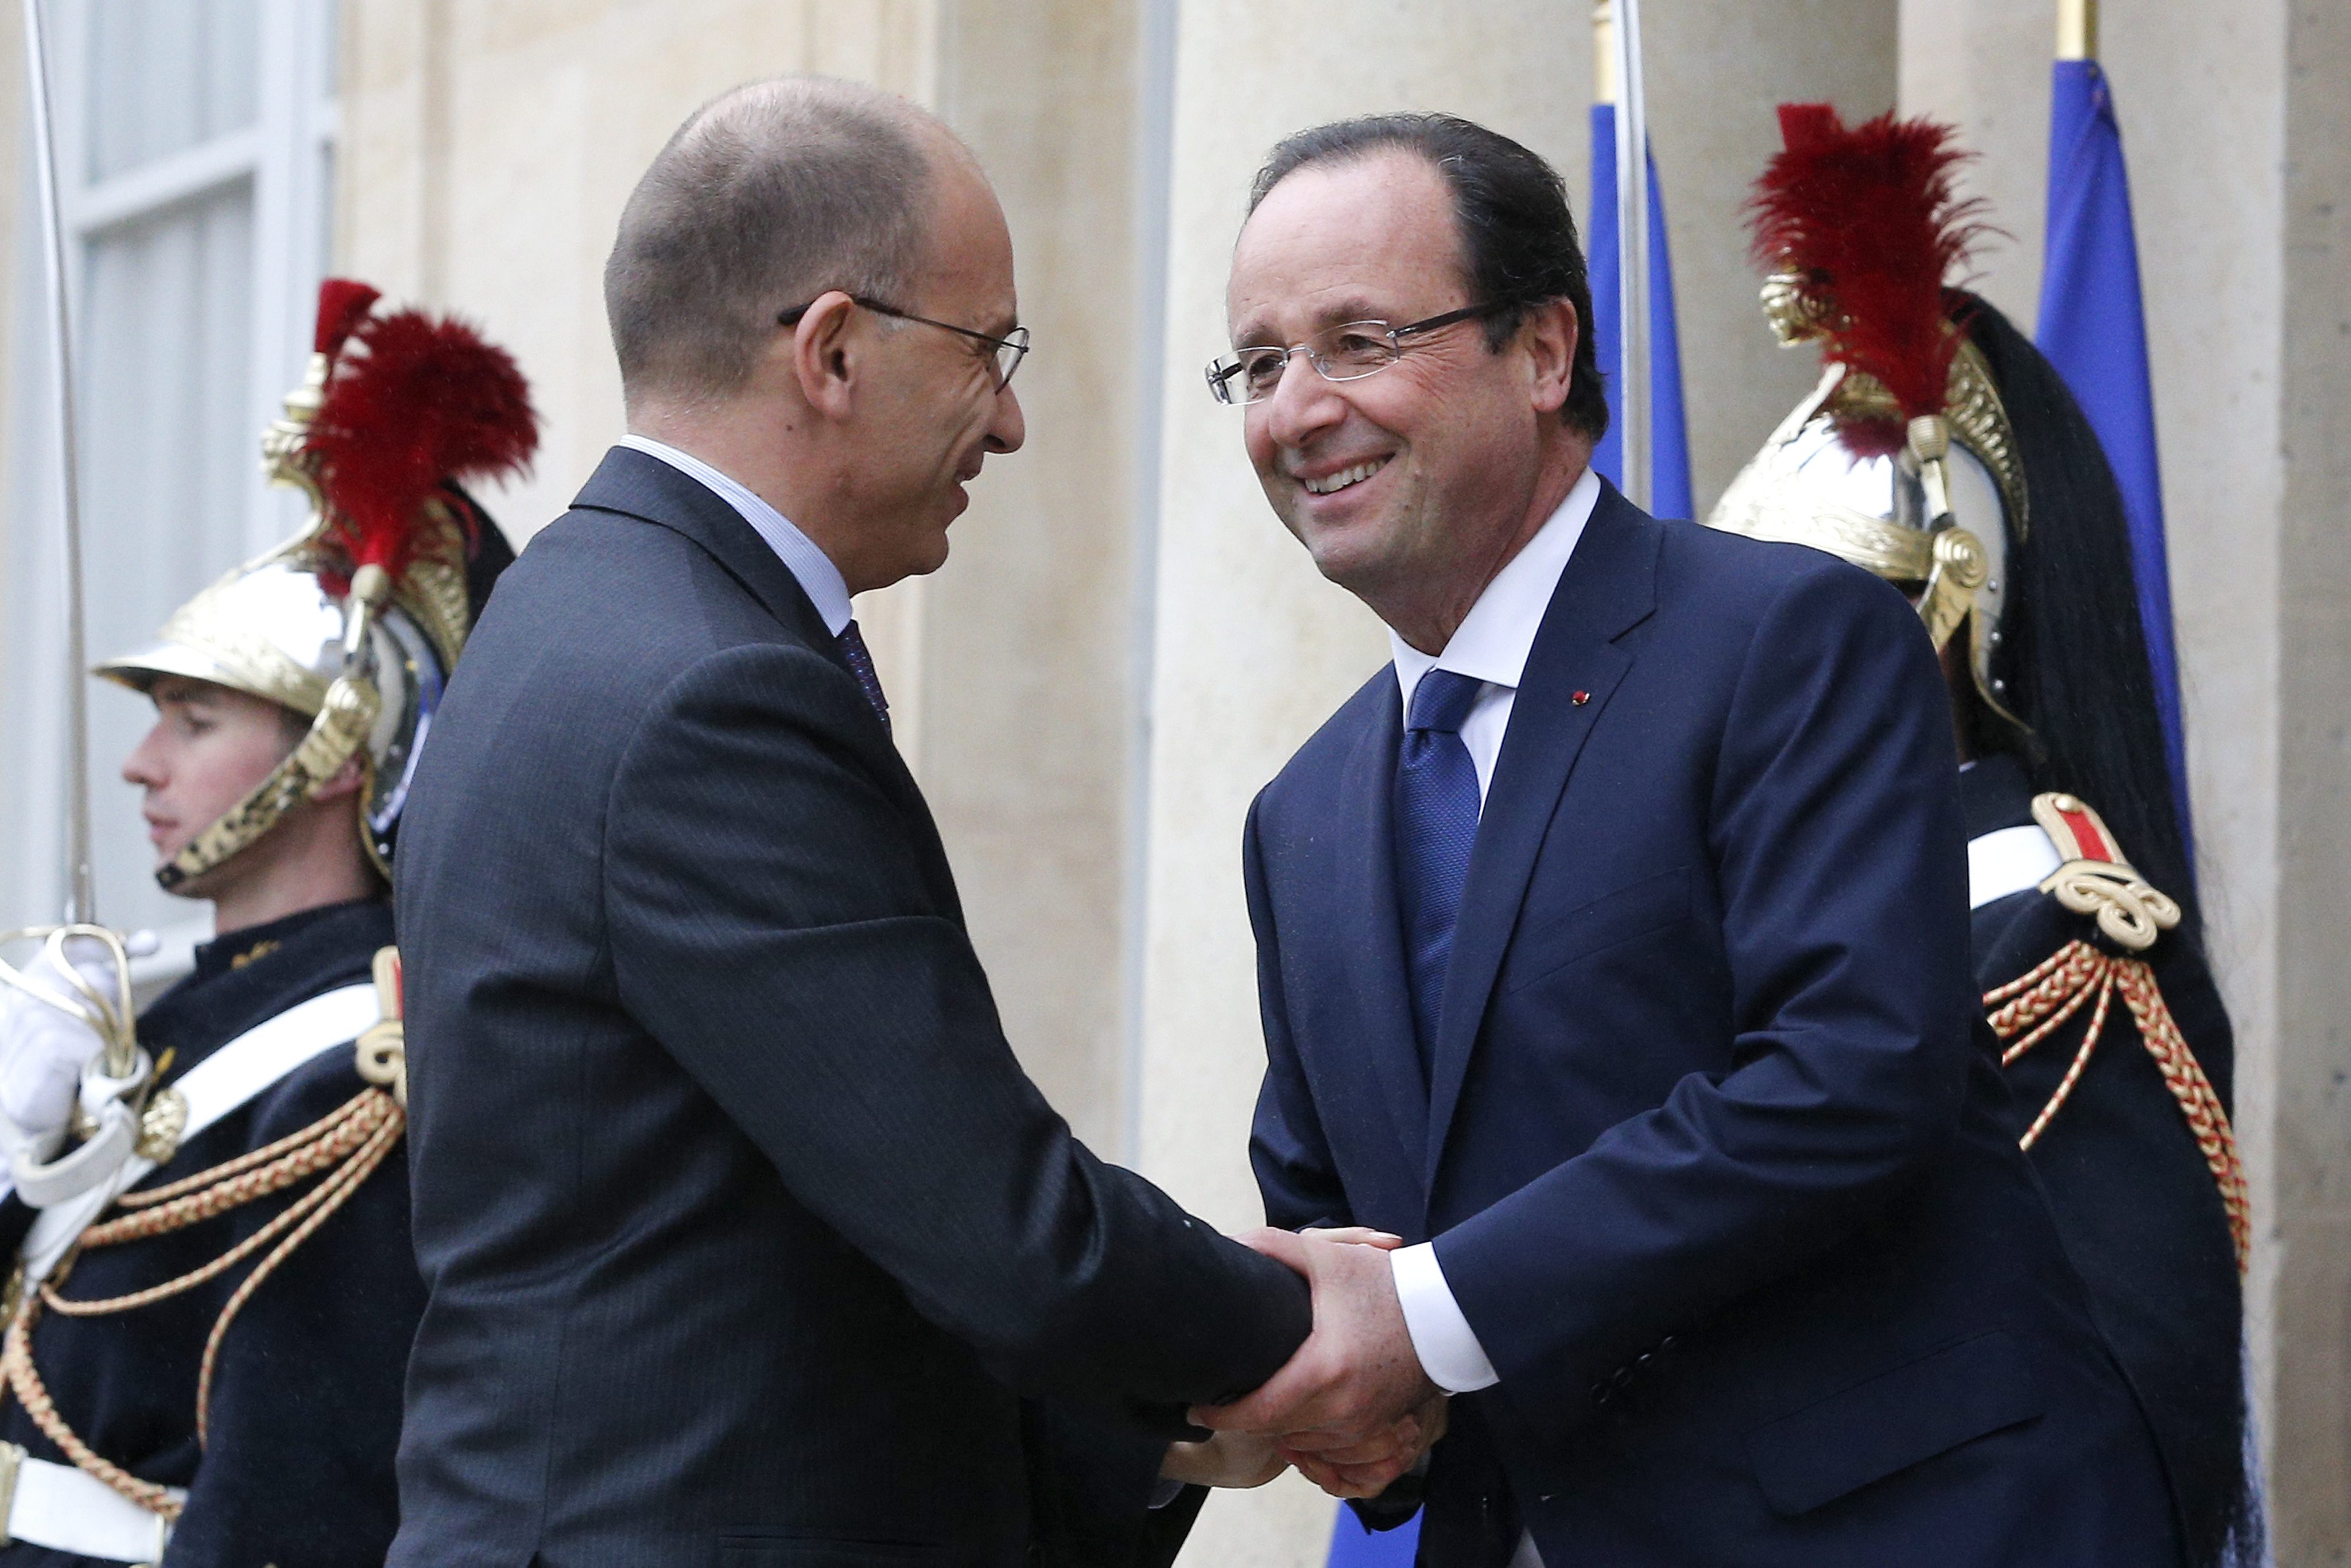 De Italiaanse premier Enrico Letta ontvangt de Franse president François Hollande. Zij zullen het onder meer hebben over de economie van de eurozone en over de samenwerking tussen de luchtvaartbedrijven Alitalia en Air France-KLM.